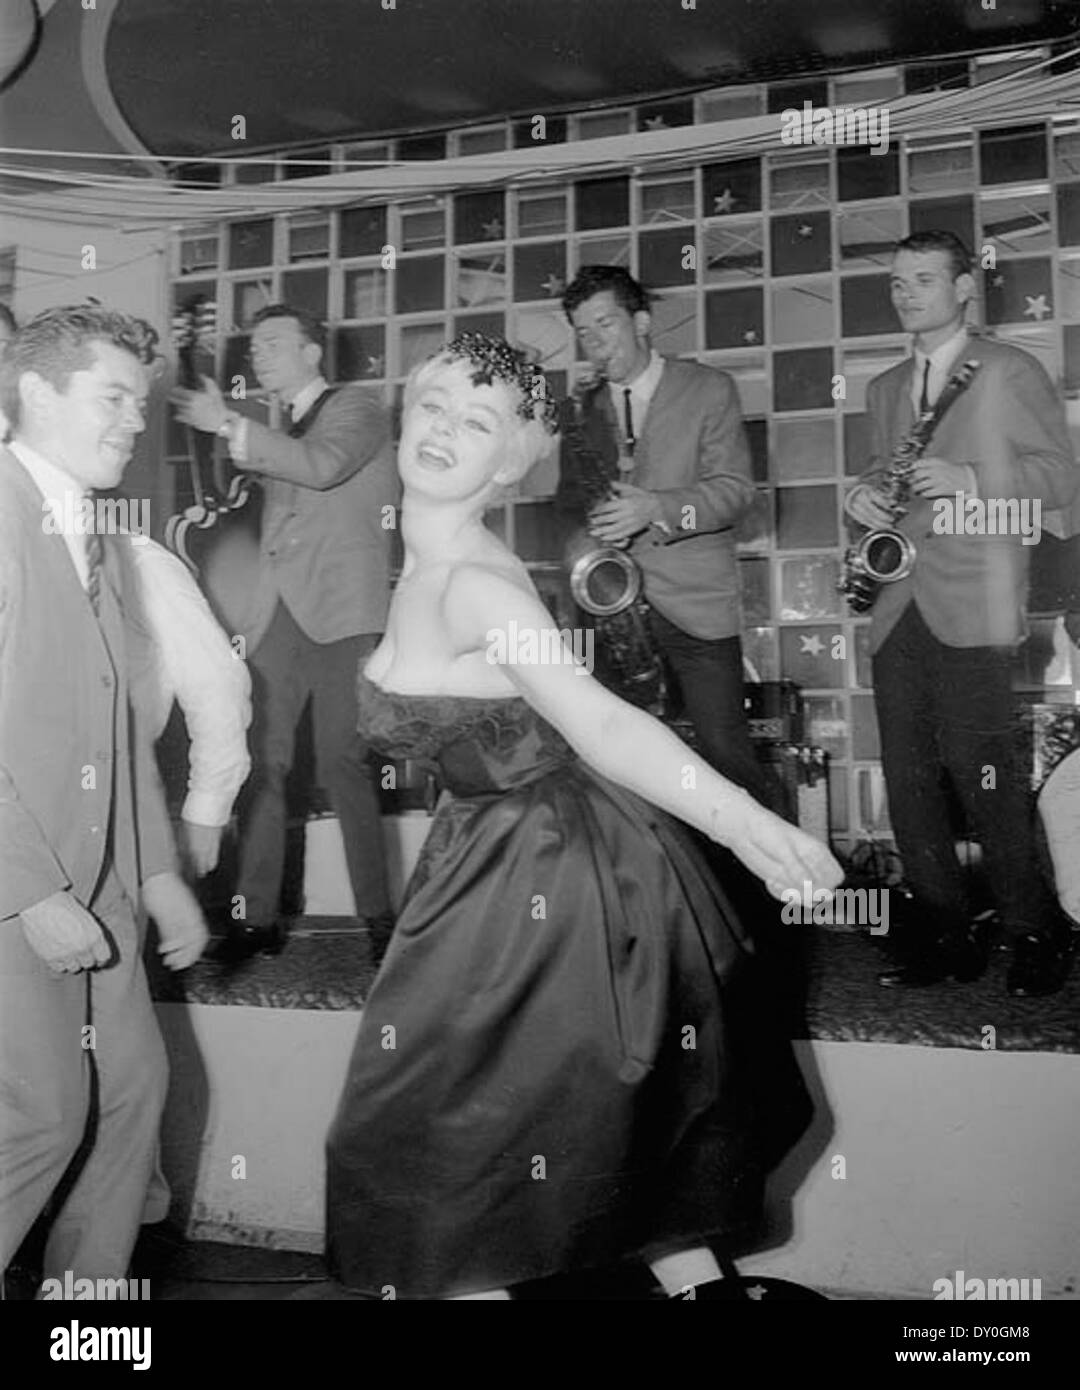 Sabrina fait le Twist, Peppermint Lounge, Sydney, janvier 1962 / Agence photographique australien Banque D'Images